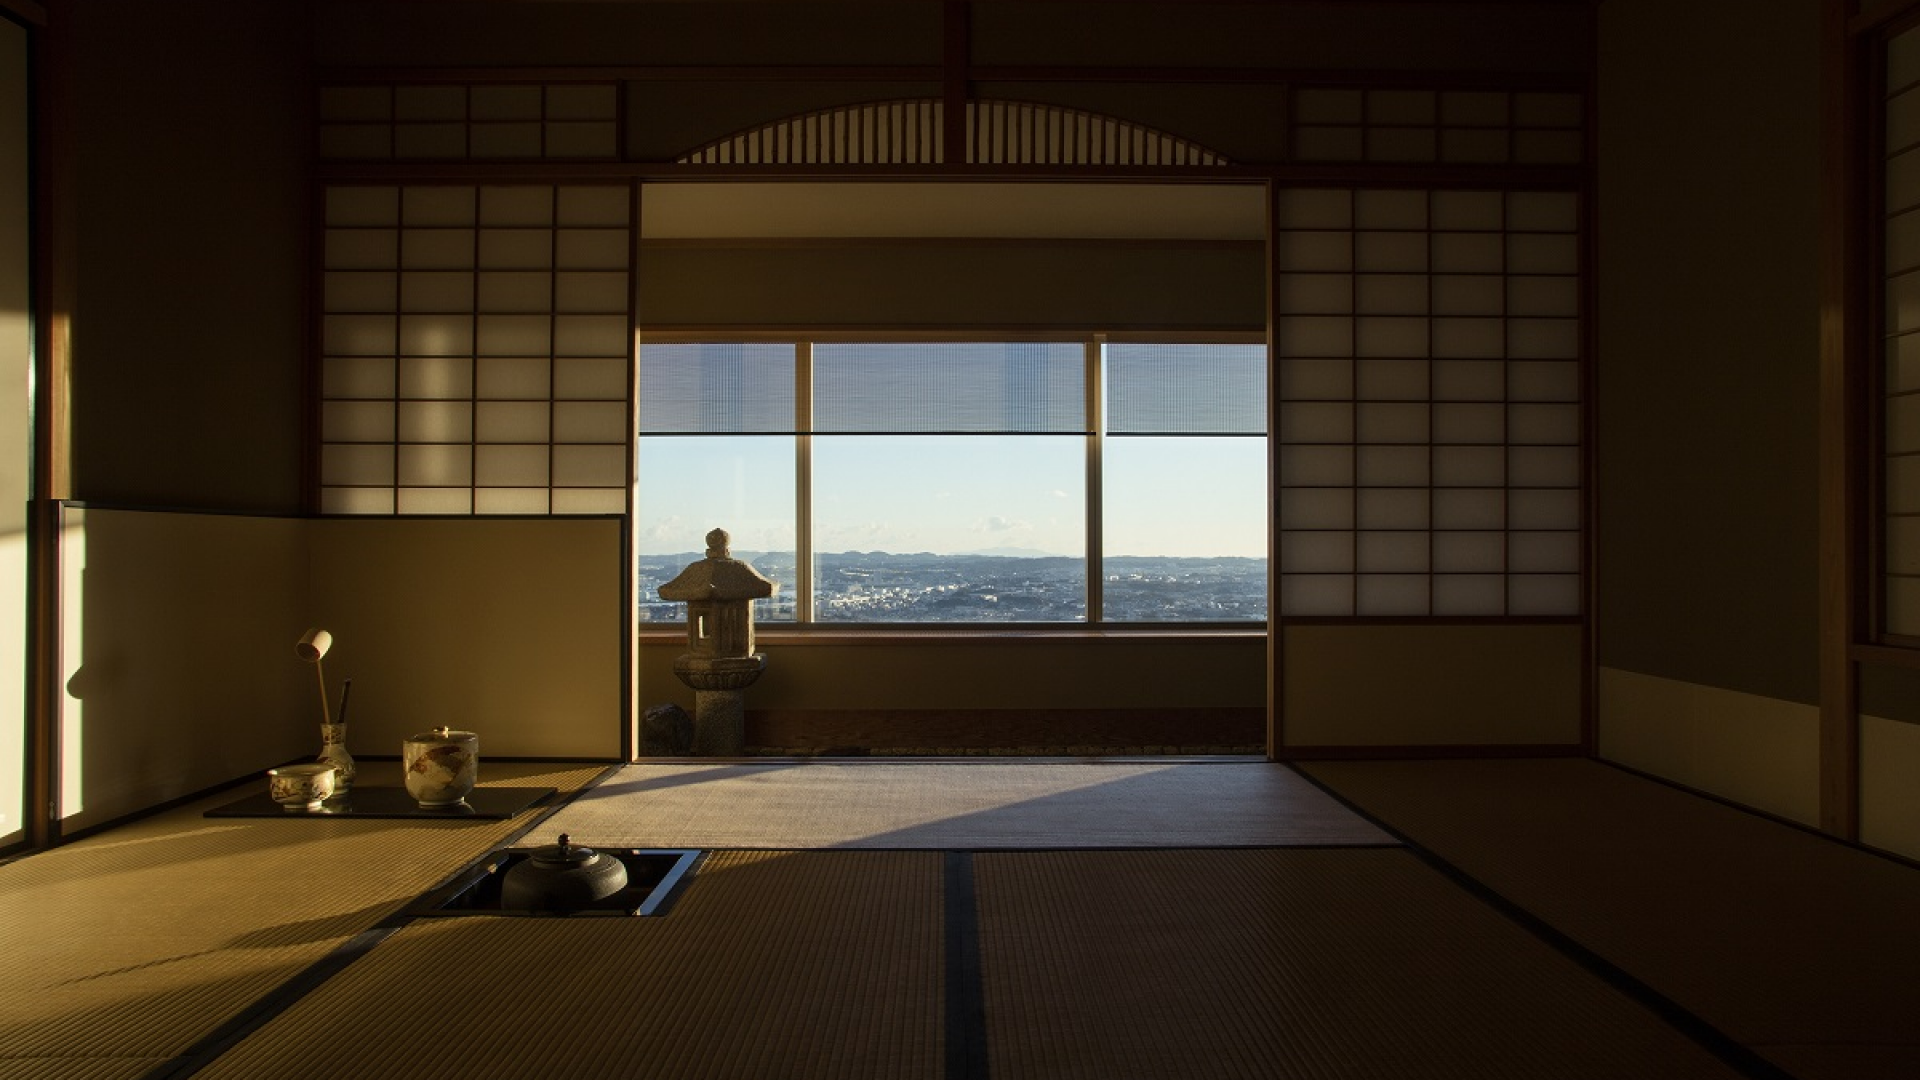 Kaikoh-an Japanese Tea Ceremony Room